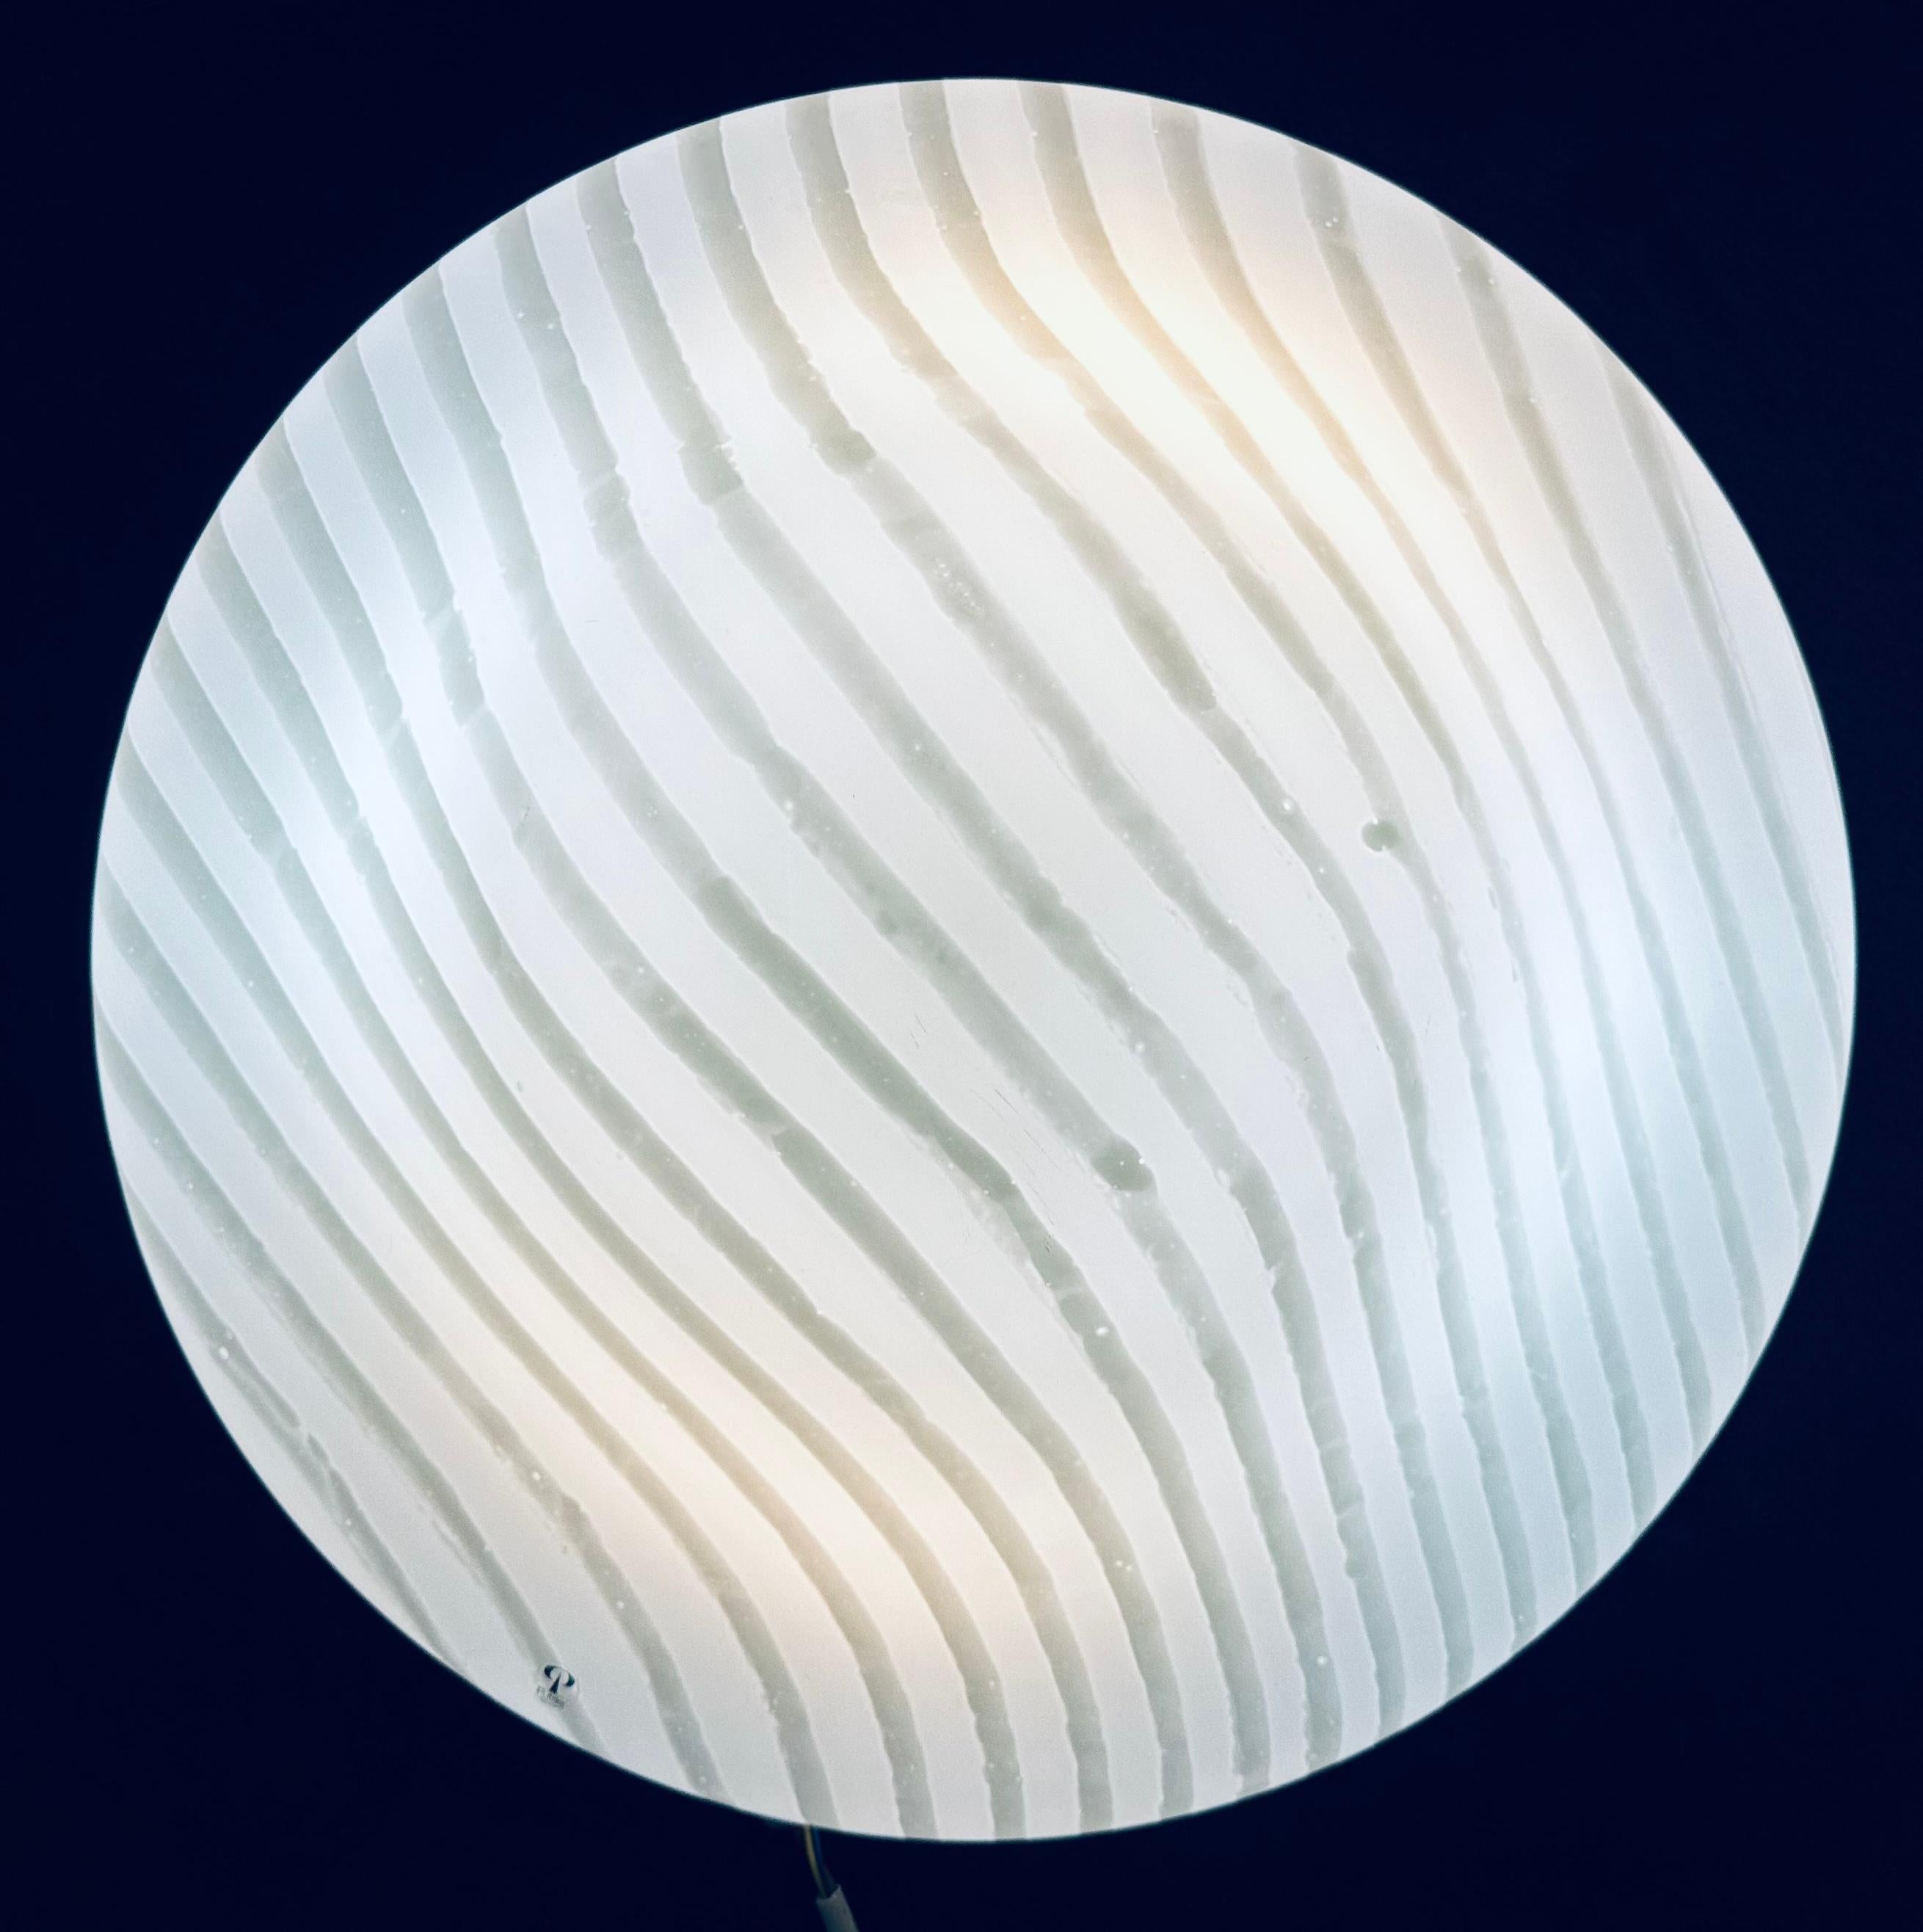 Plafonnier allemand Peill & Putzler des années 1970, de grande taille, en verre opale de l'ère spatiale avec un motif rayé plus clair, à encastrer.  L'abat-jour circulaire en verre rayé opale est fixé sur le cadre/porte-ampoule en métal laqué blanc